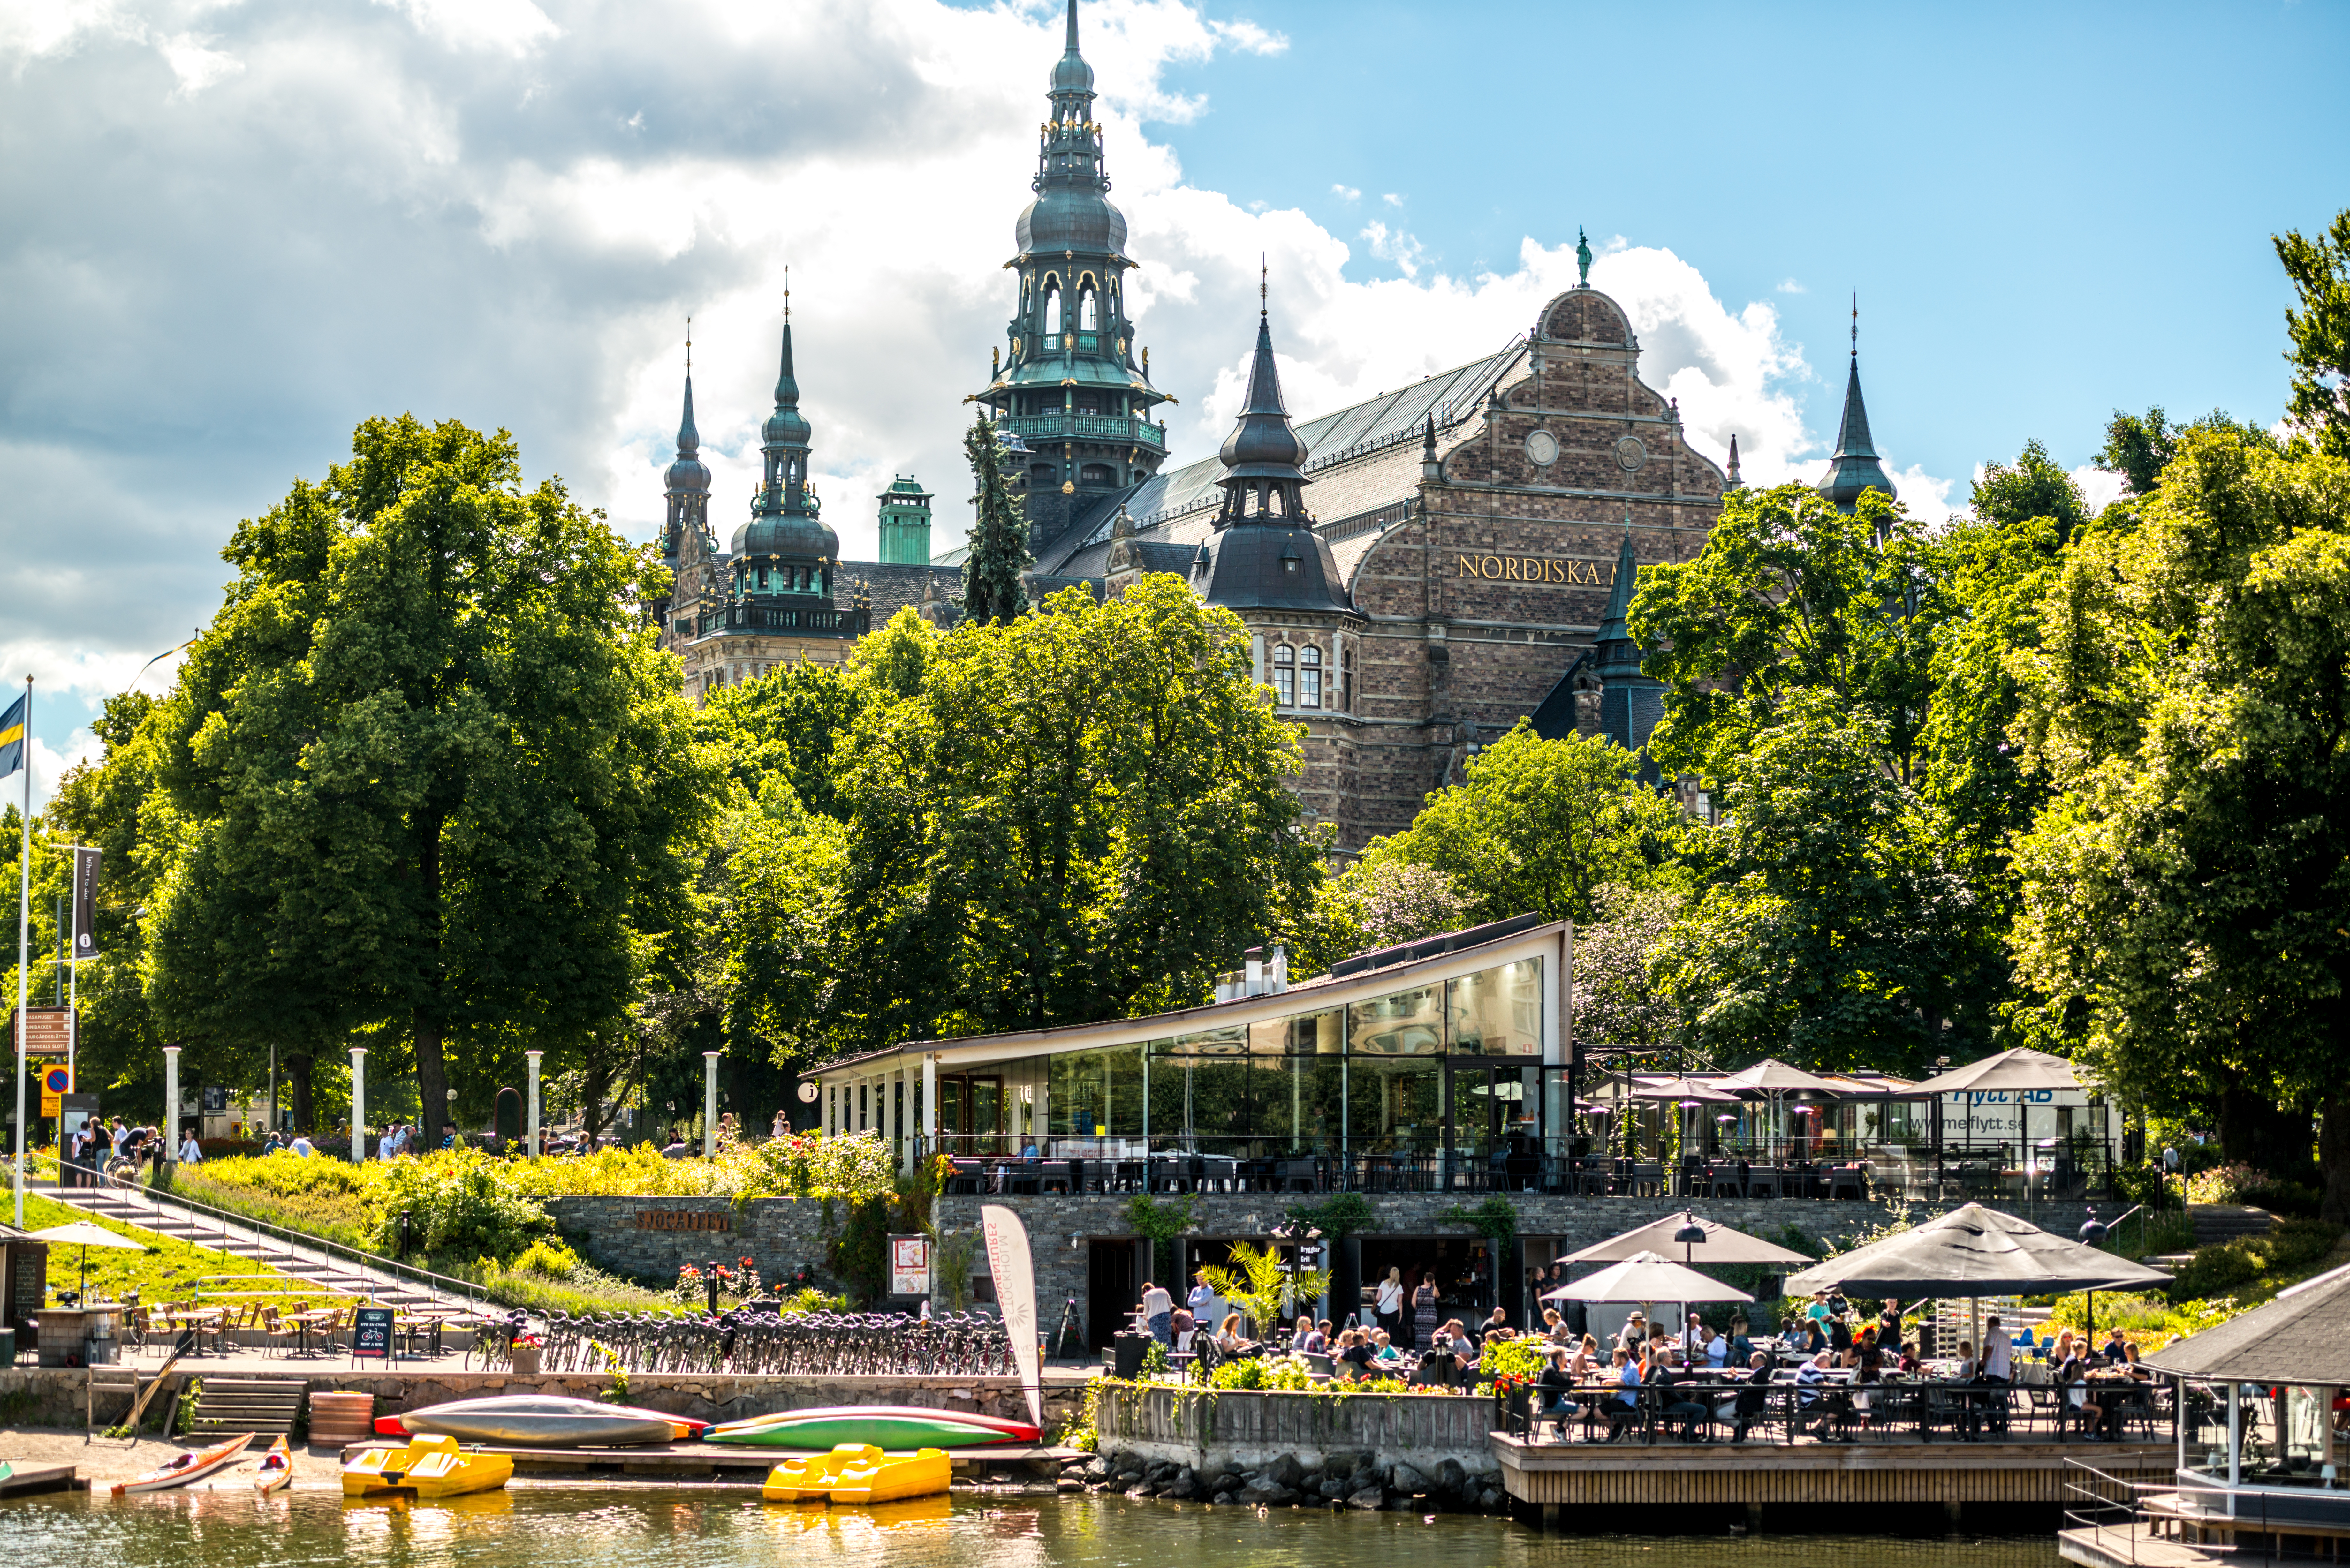  Een foto van het Nordiska-gebouw in Stockholm, met een café aan de voorzijde, aan de rand van het water. 